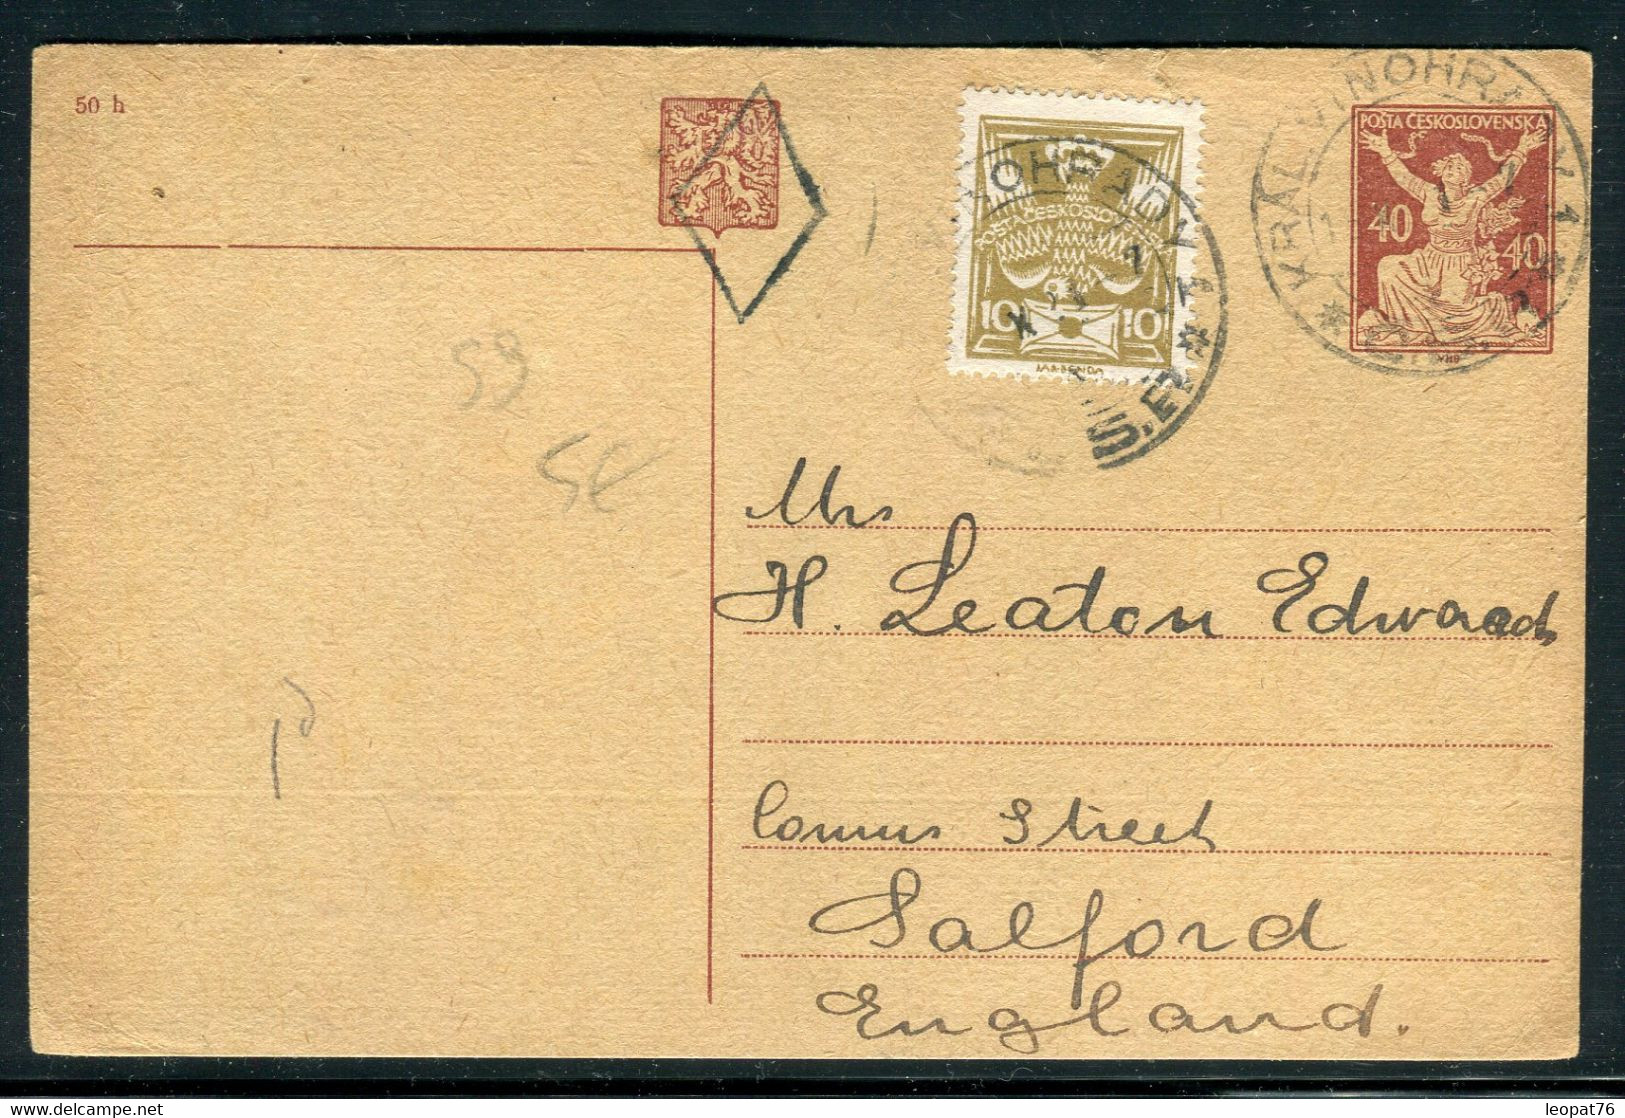 Tchécoslovaquie - Entier Postal + Complément De Kral. Vinohrad Pour Le Royaume Uni En 1921 - Prix Fixe !!! - Ref S 9 - Cartes Postales